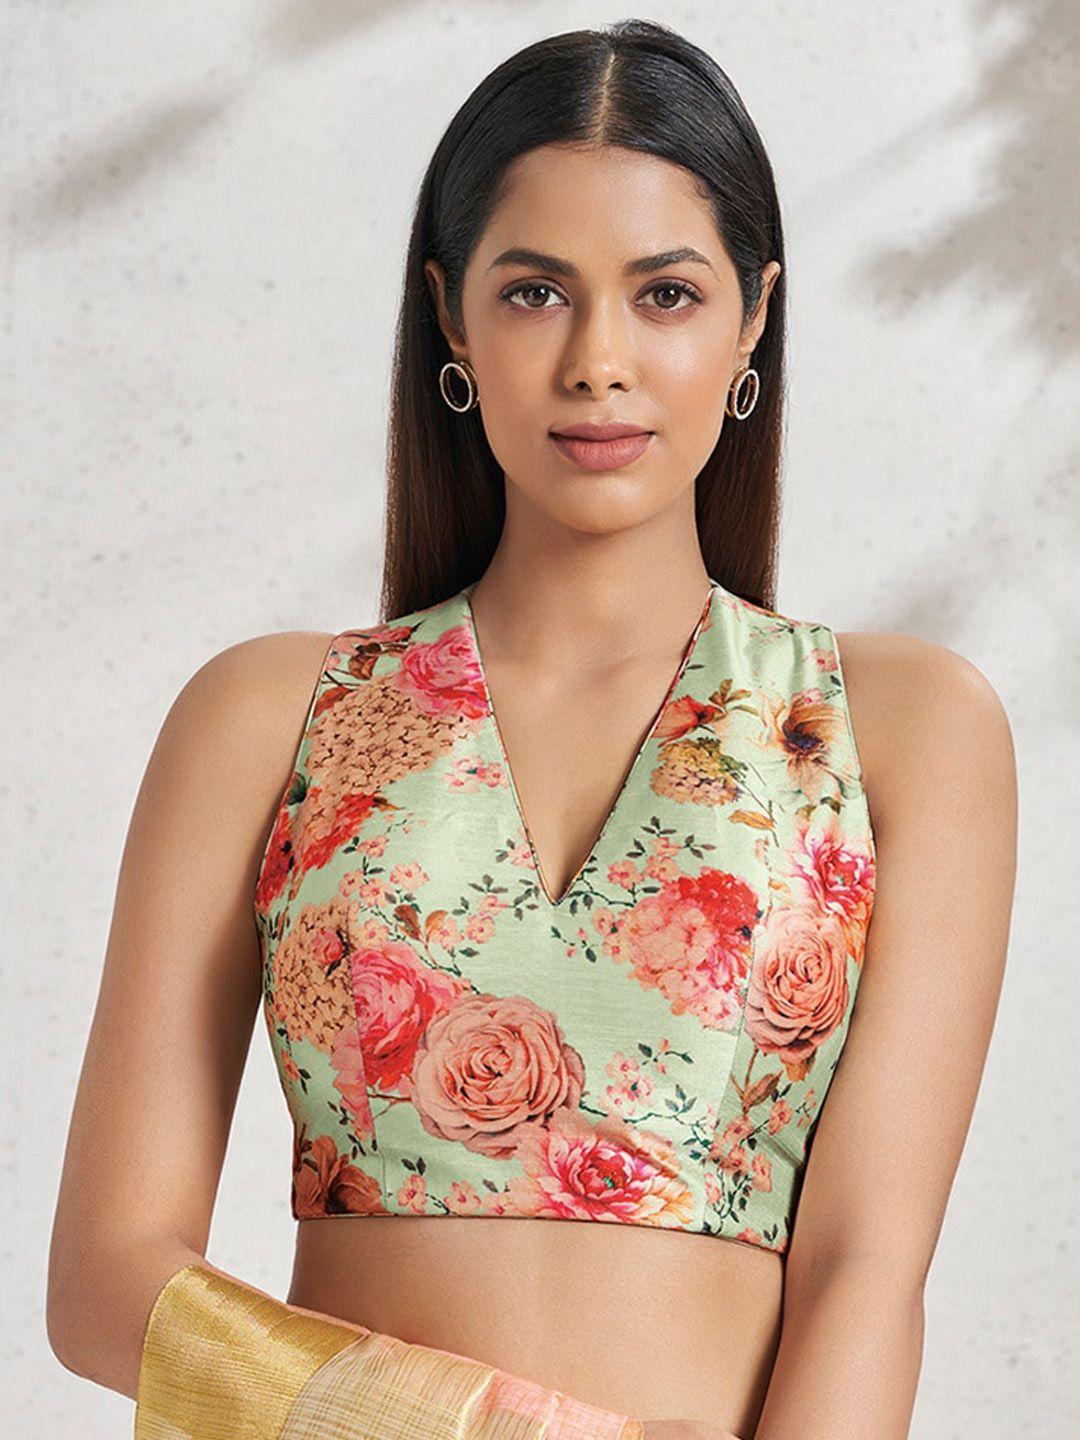 salwar studio floral printed sleeveless saree blouse